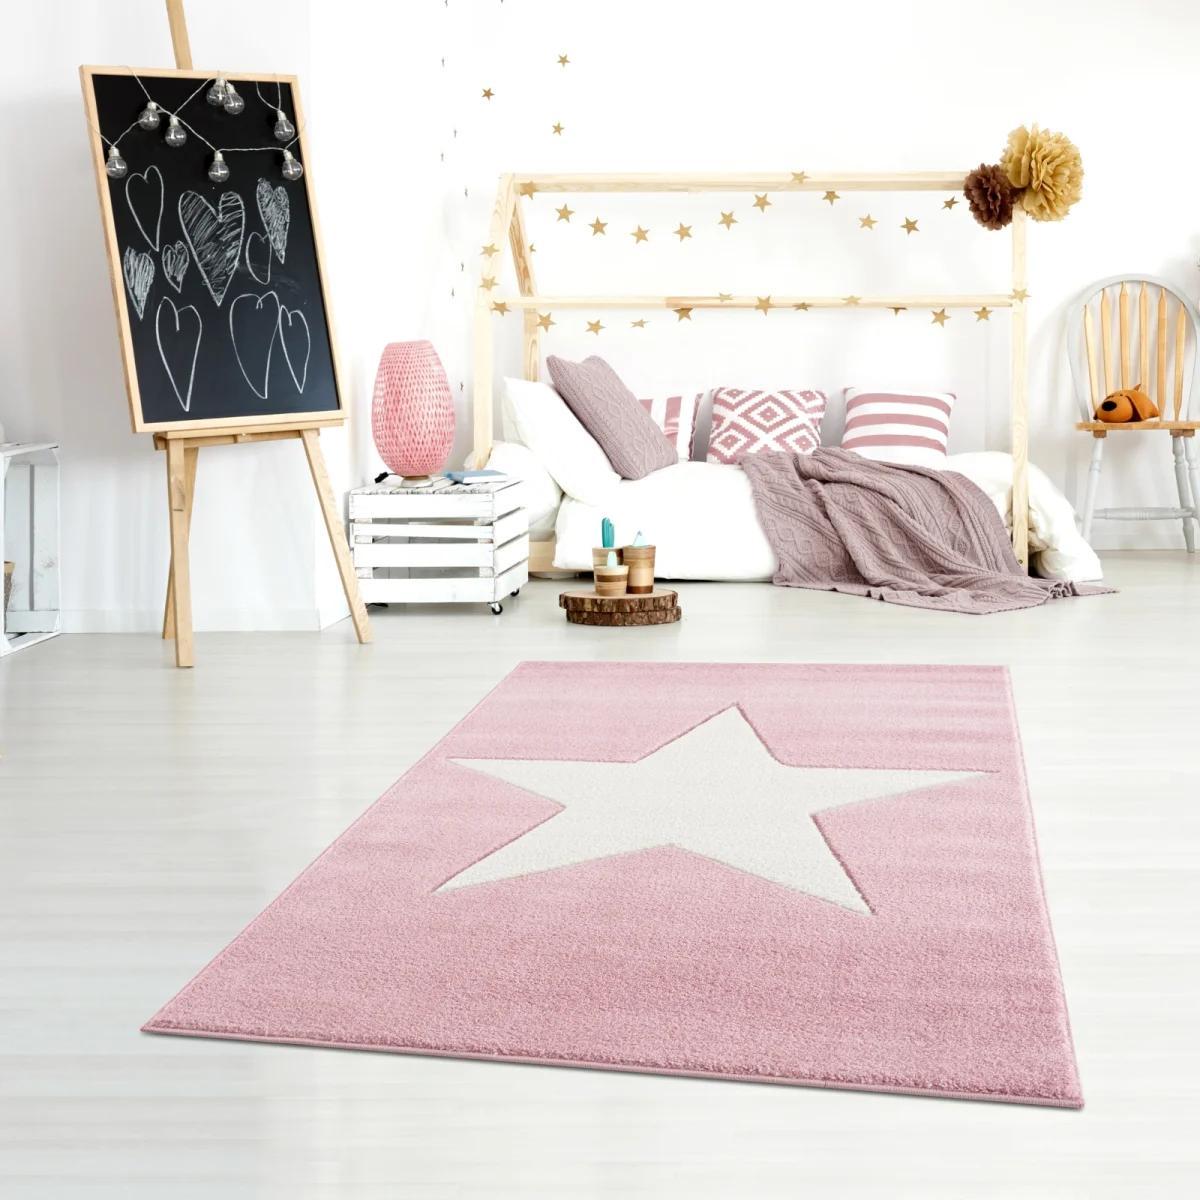 Dywan dziecięcy Big Star Pink 160x230 cm do pokoju dziecięcego różowy z gwiazdą nr. 1